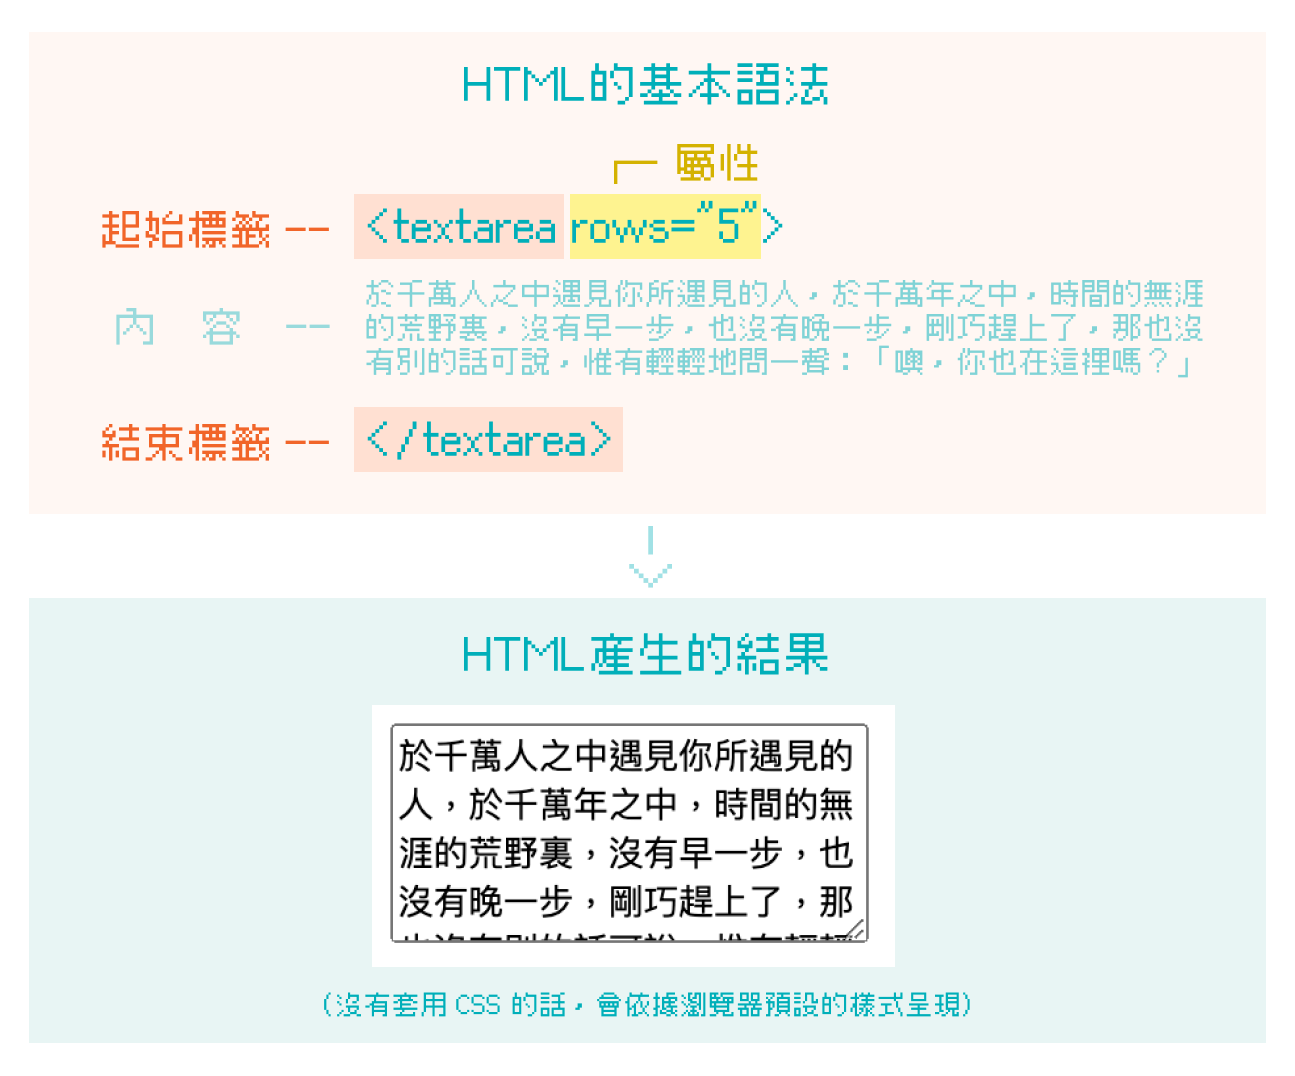 HTML 標籤的基本語法架構